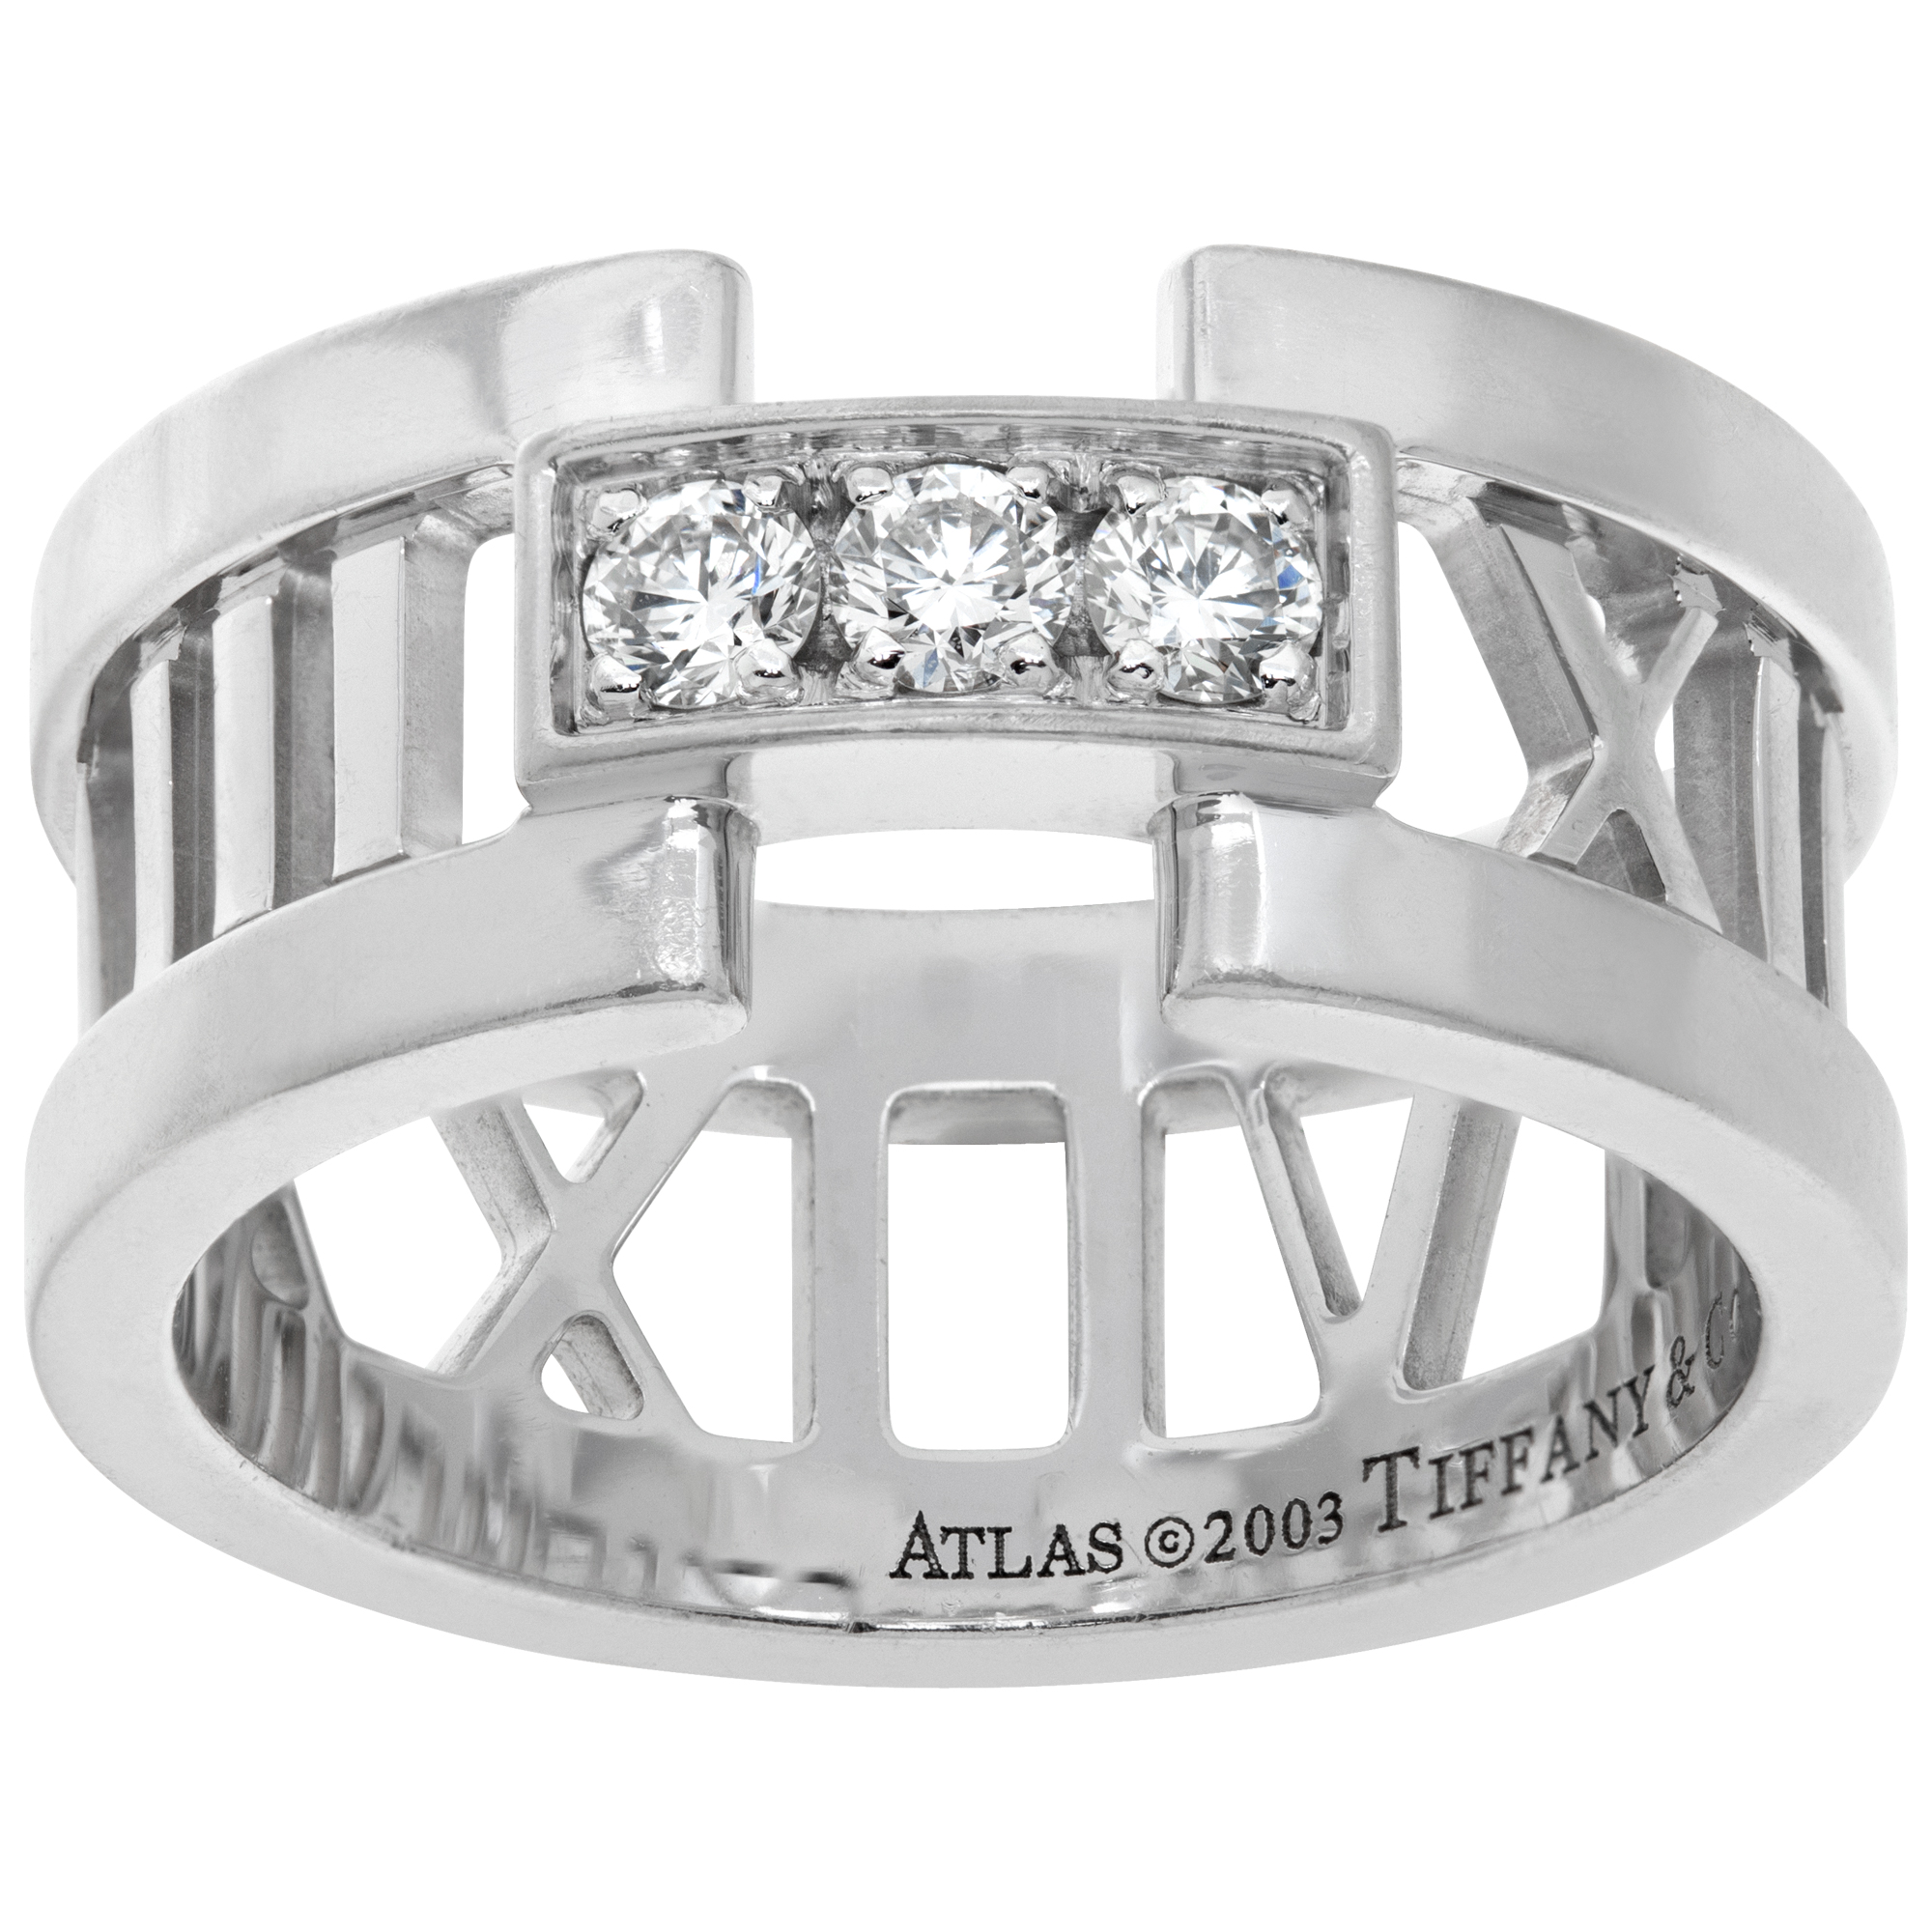 Tiffany & Co. Atlas 3 diamond ring in 18k white gold